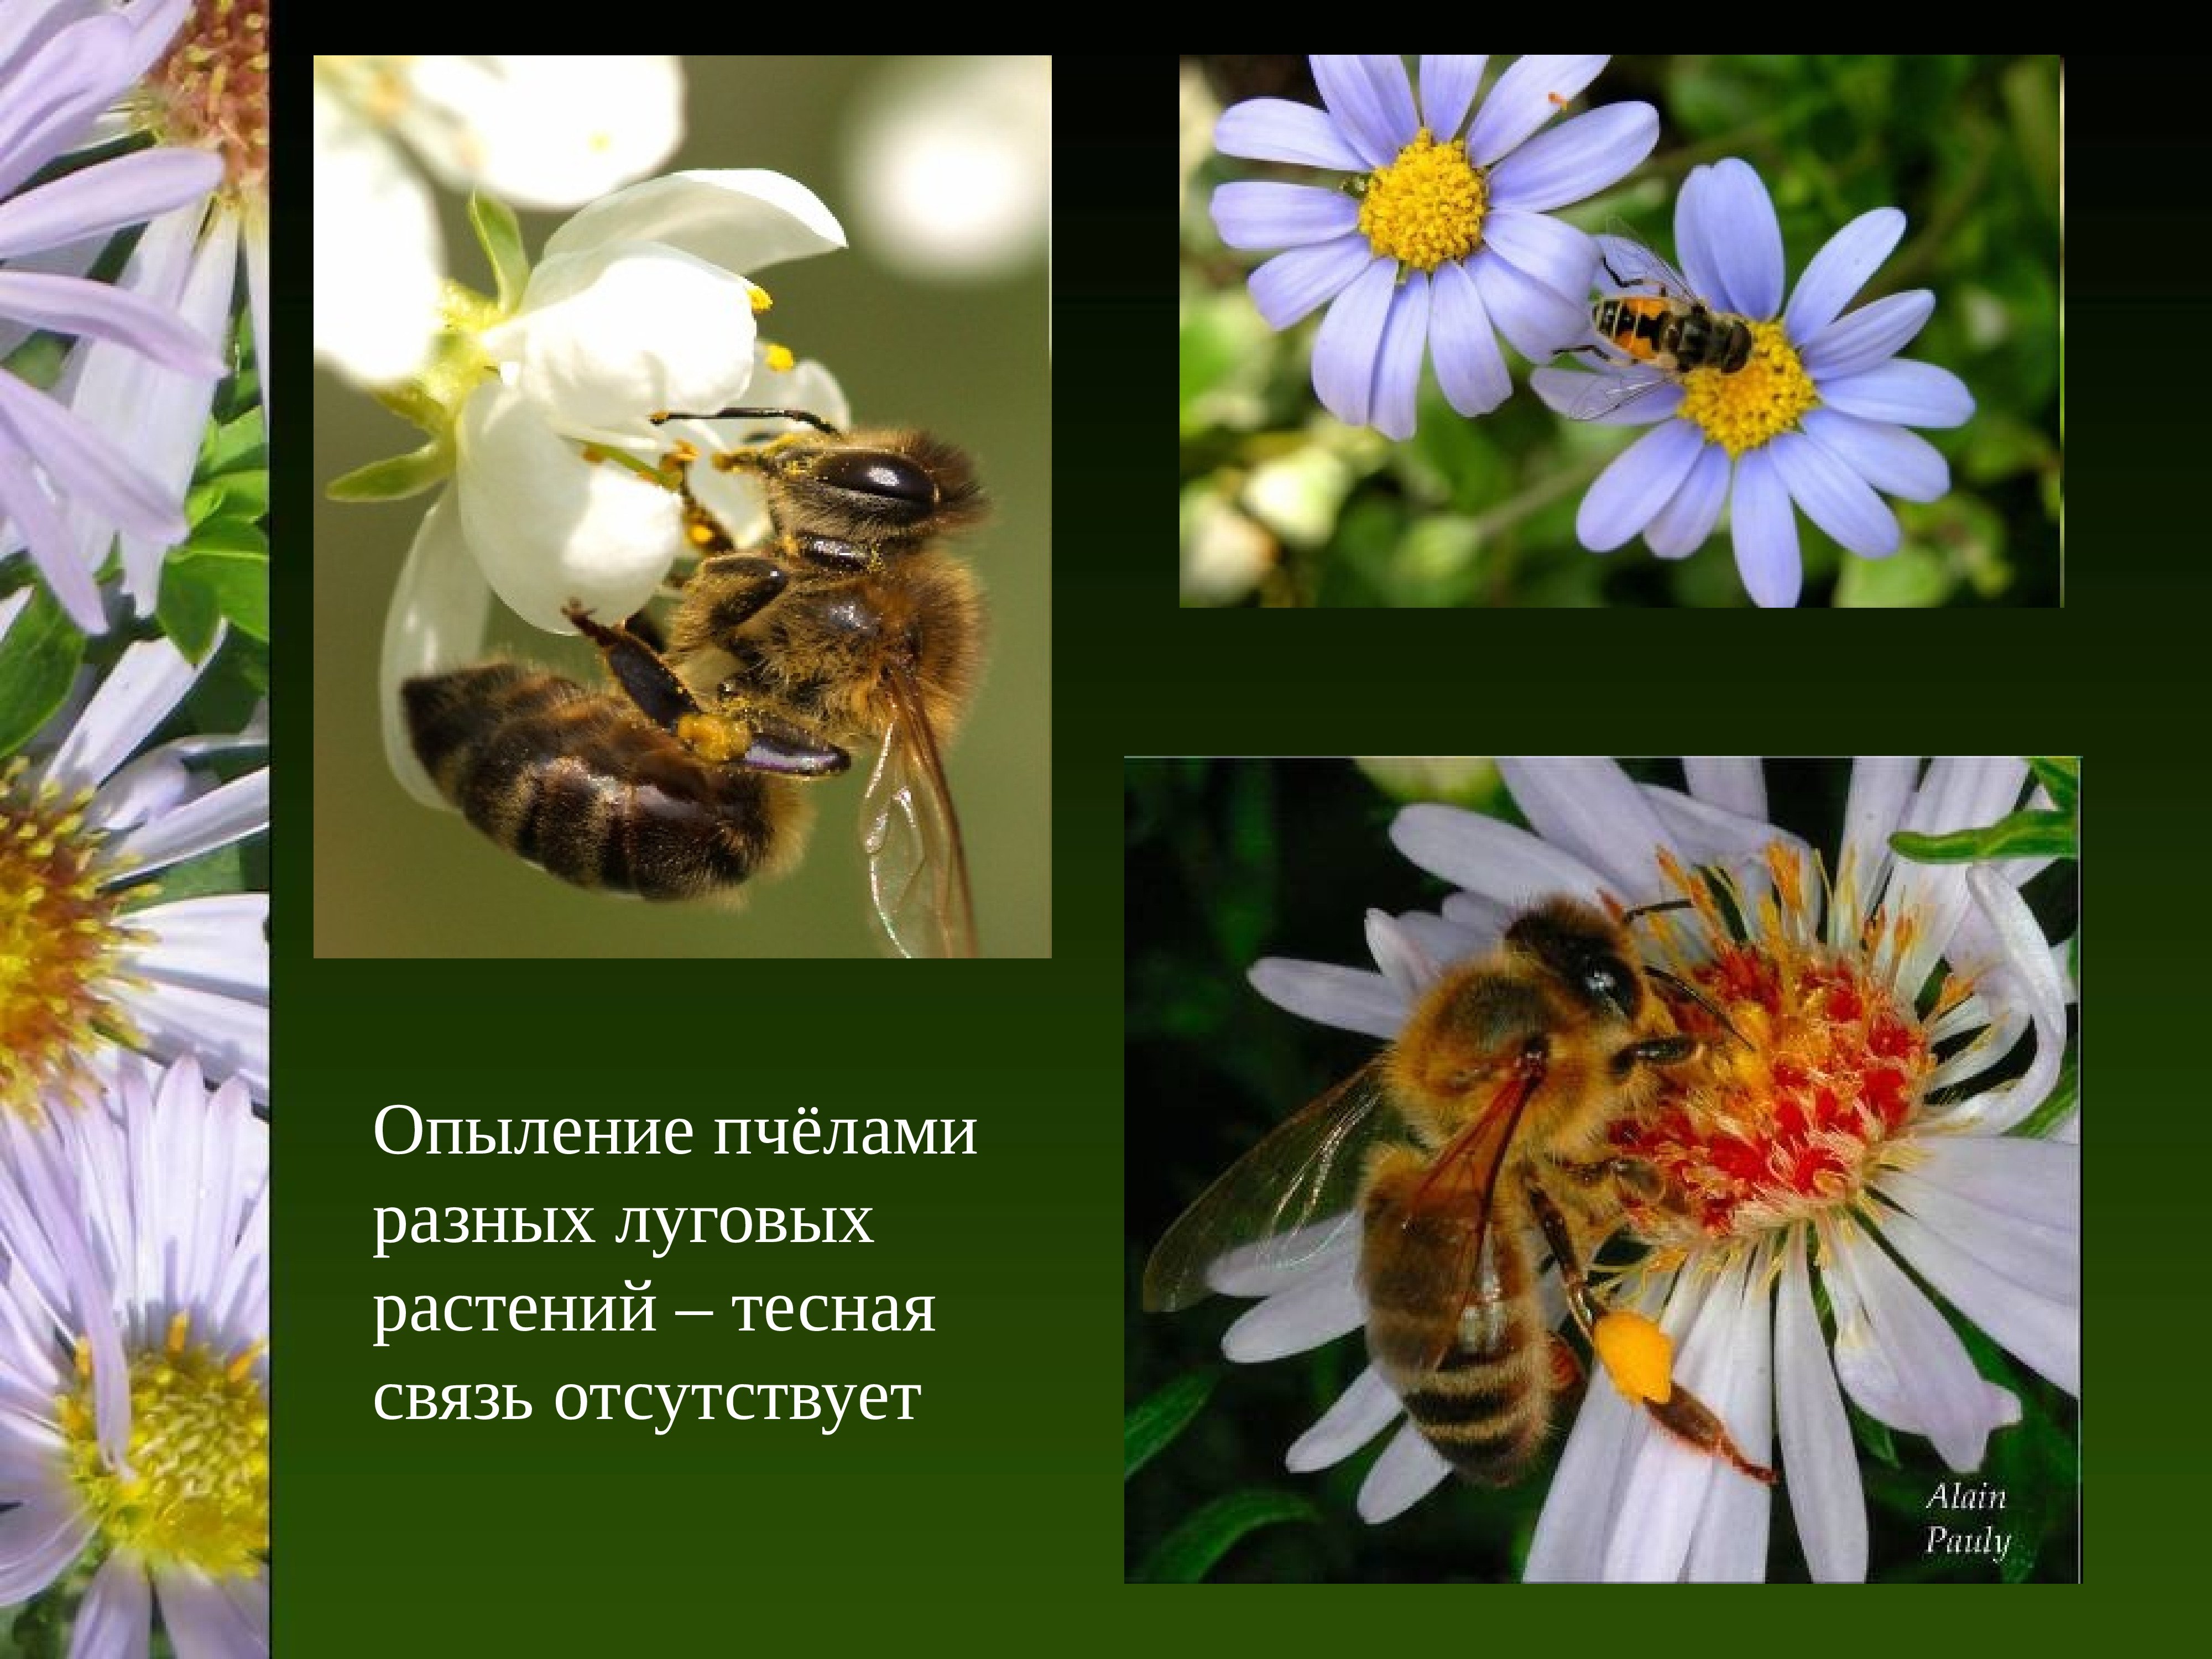 Какая взаимосвязь между растениями и растениями. Опыление растений пчелами. Опыление пчелами луговых растений. Пчела опыляет цветок. Опыление цветков пчелами.